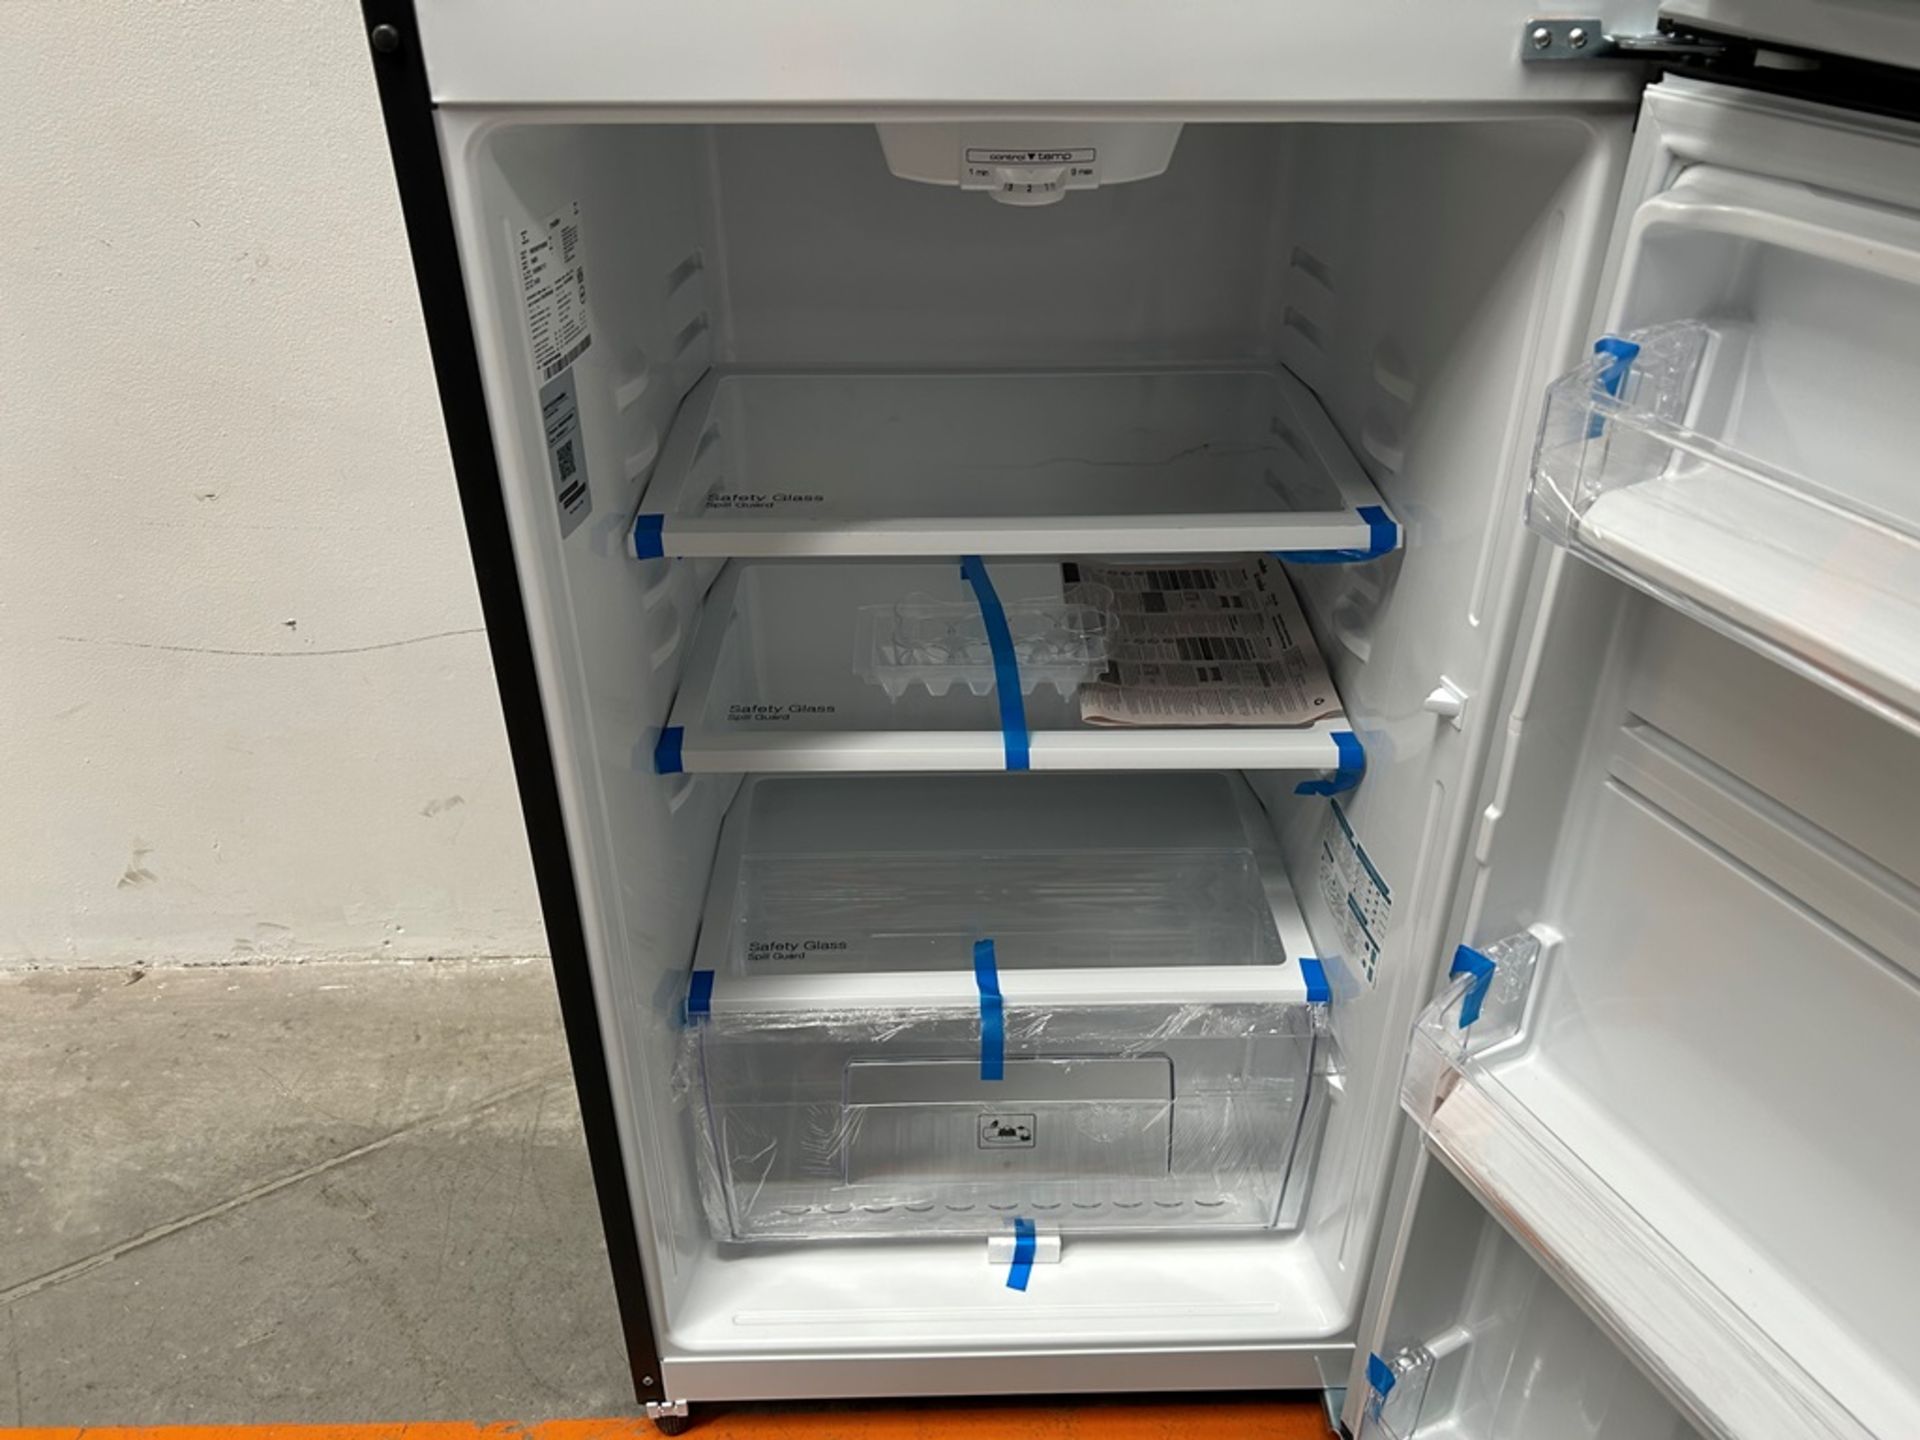 Lote de 2 refrigeradores contiene: 1 refrigerador Marca MABE, Modelo RME360PVMRM, Serie 01988, Colo - Image 7 of 18